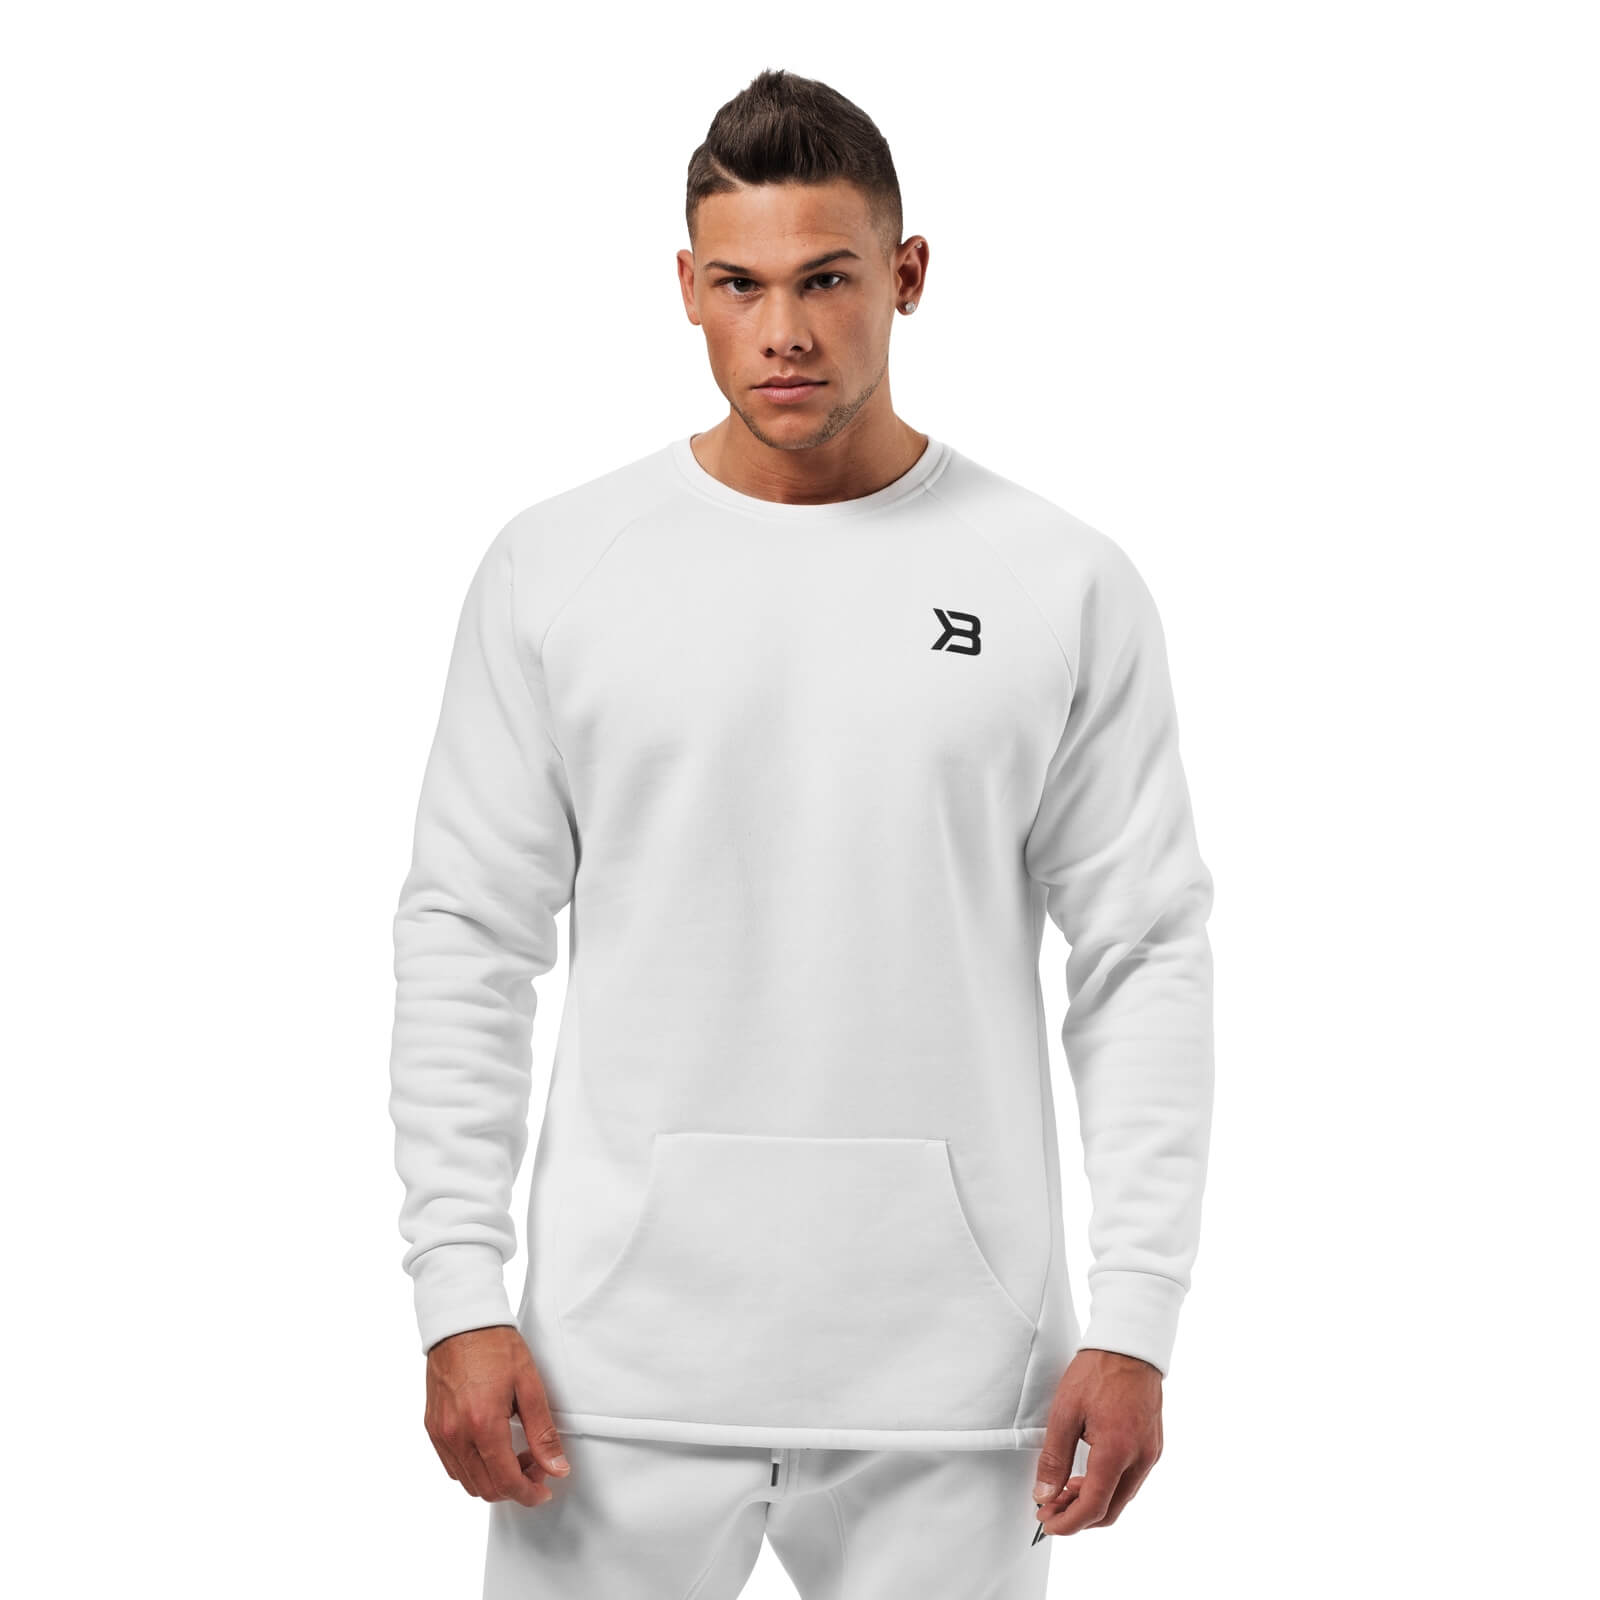 Kolla in Astor Sweater, white, Better Bodies hos SportGymButiken.se